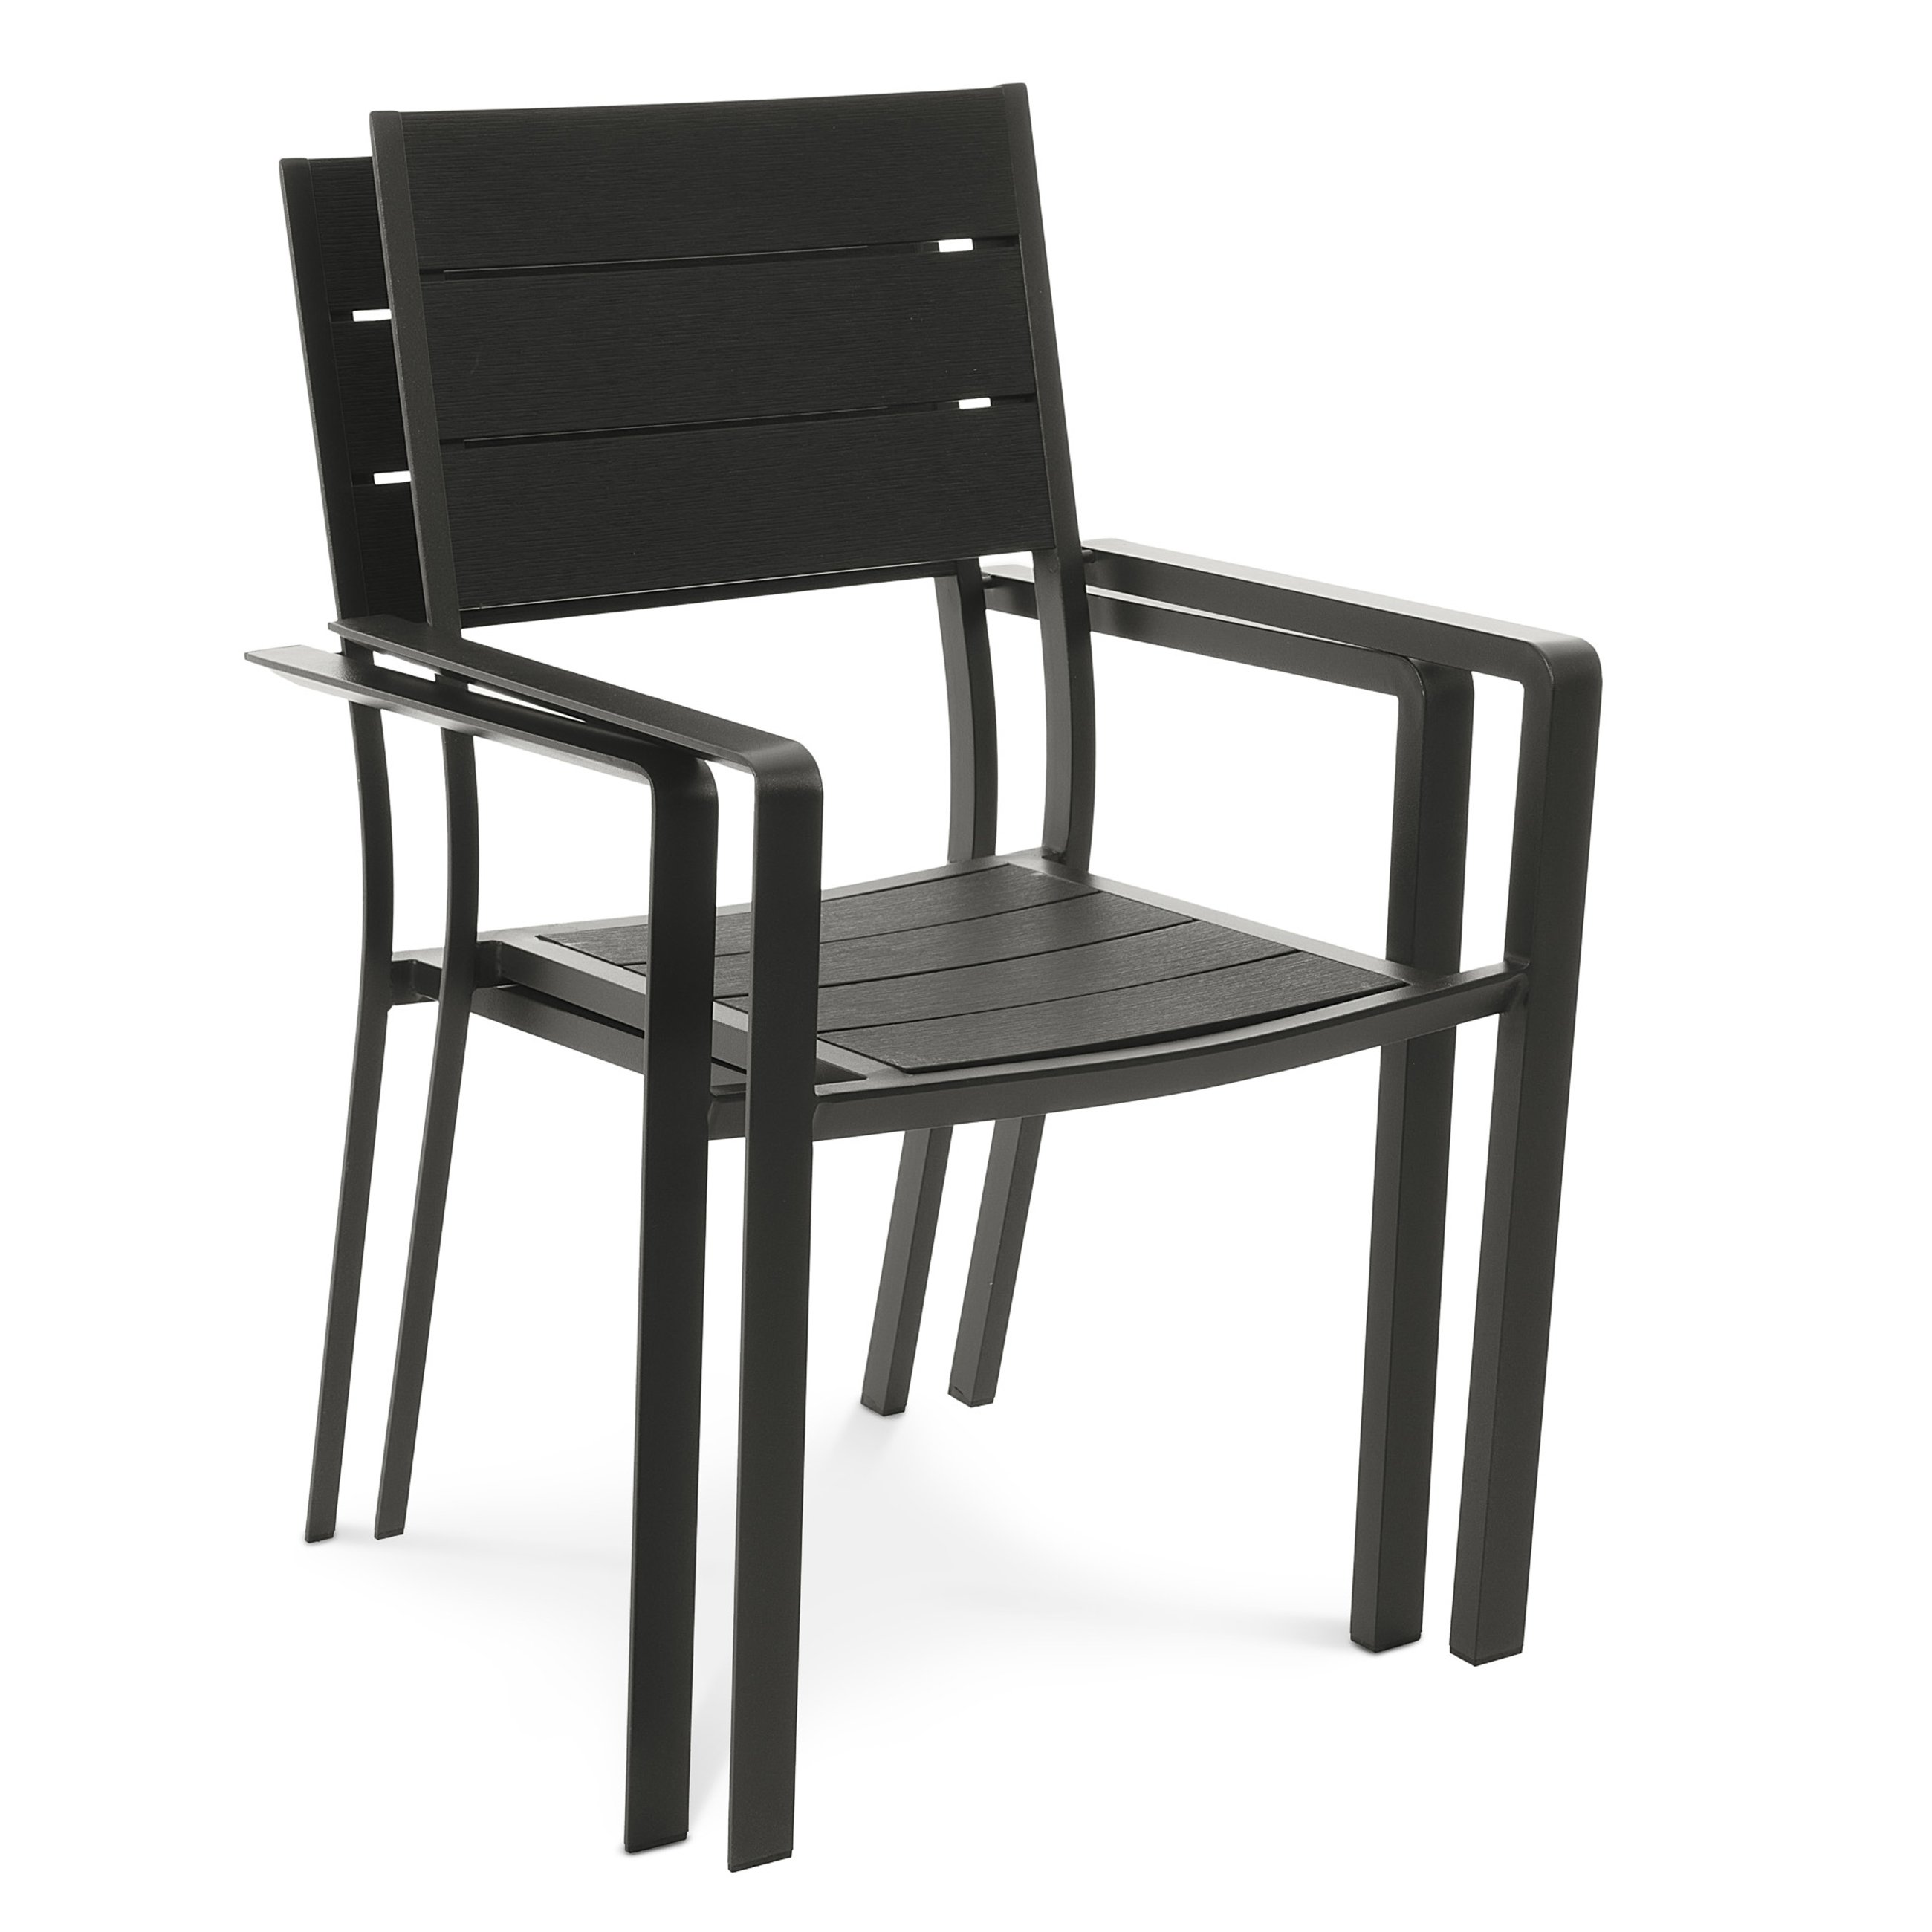 Krzesła Teri zostały zaprojektowane w taki sposób, aby ich kształt umożliwiał sztaplowanie